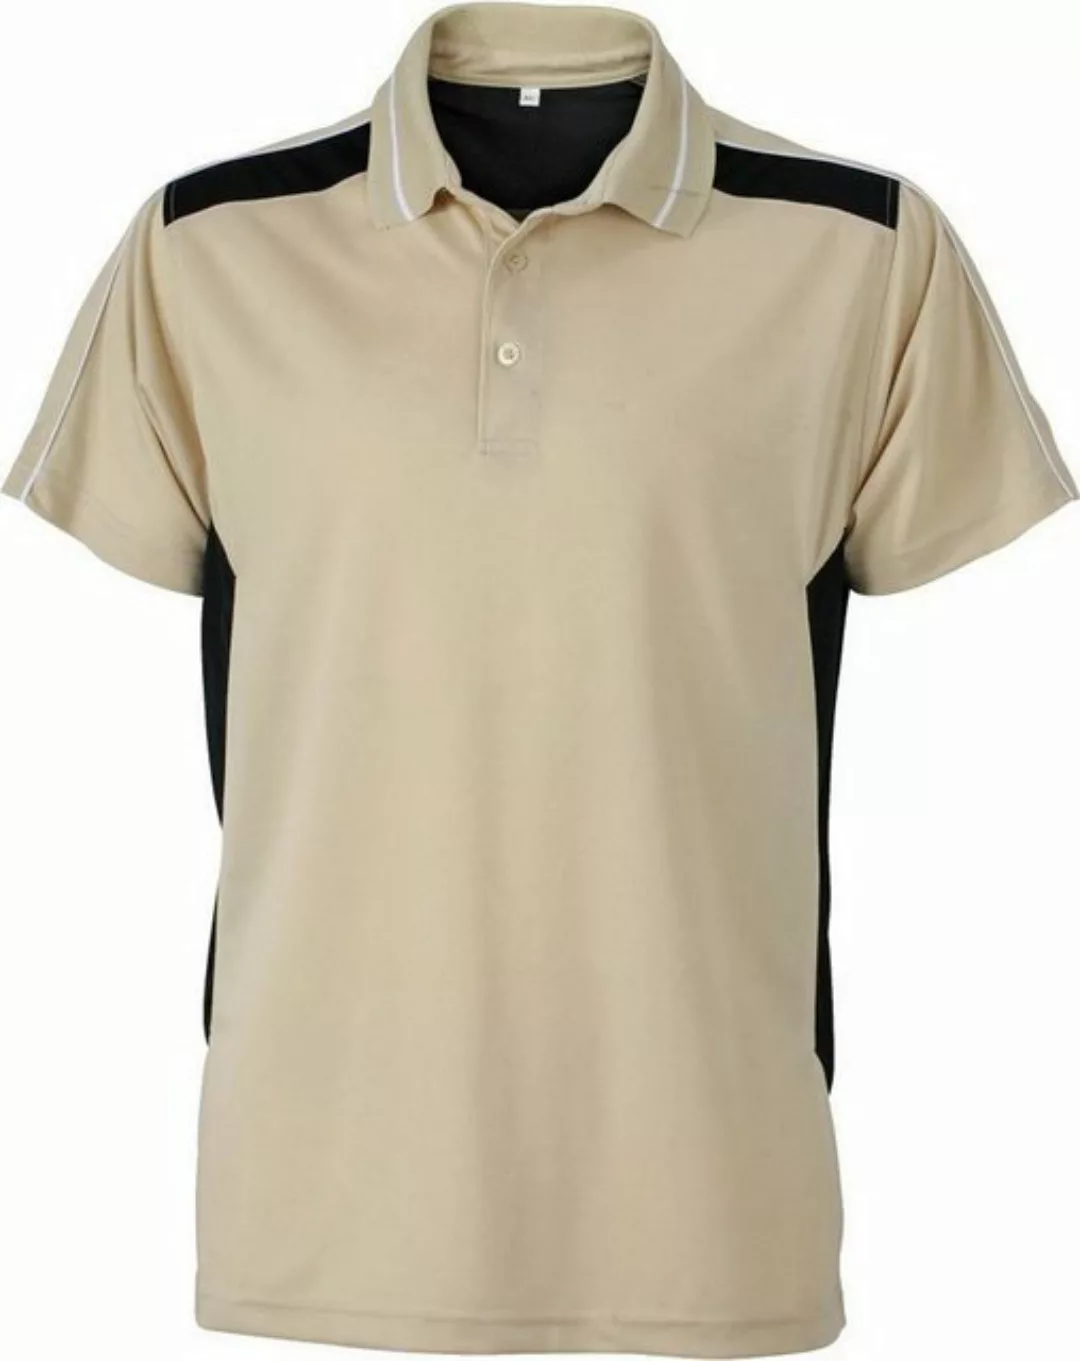 James & Nicholson Poloshirt JN 828 Herren Workwear Piqué Polo günstig online kaufen